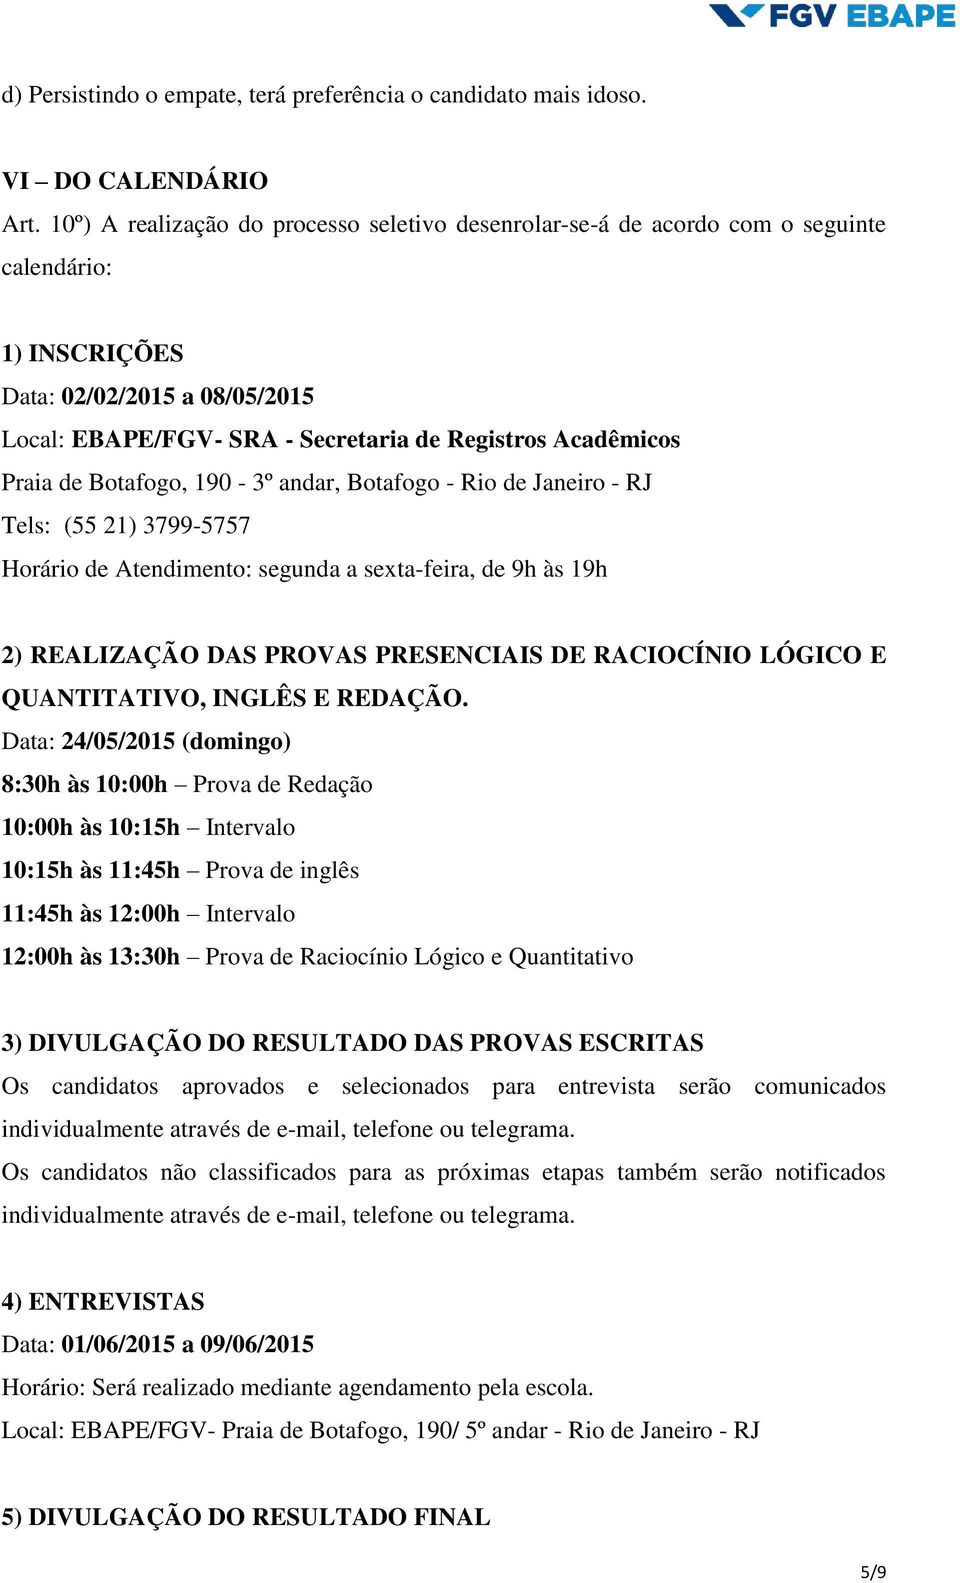 Praia de Botafogo, 190-3º andar, Botafogo - Rio de Janeiro - RJ Tels: (55 21) 3799-5757 Horário de Atendimento: segunda a sexta-feira, de 9h às 19h 2) REALIZAÇÃO DAS PROVAS PRESENCIAIS DE RACIOCÍNIO